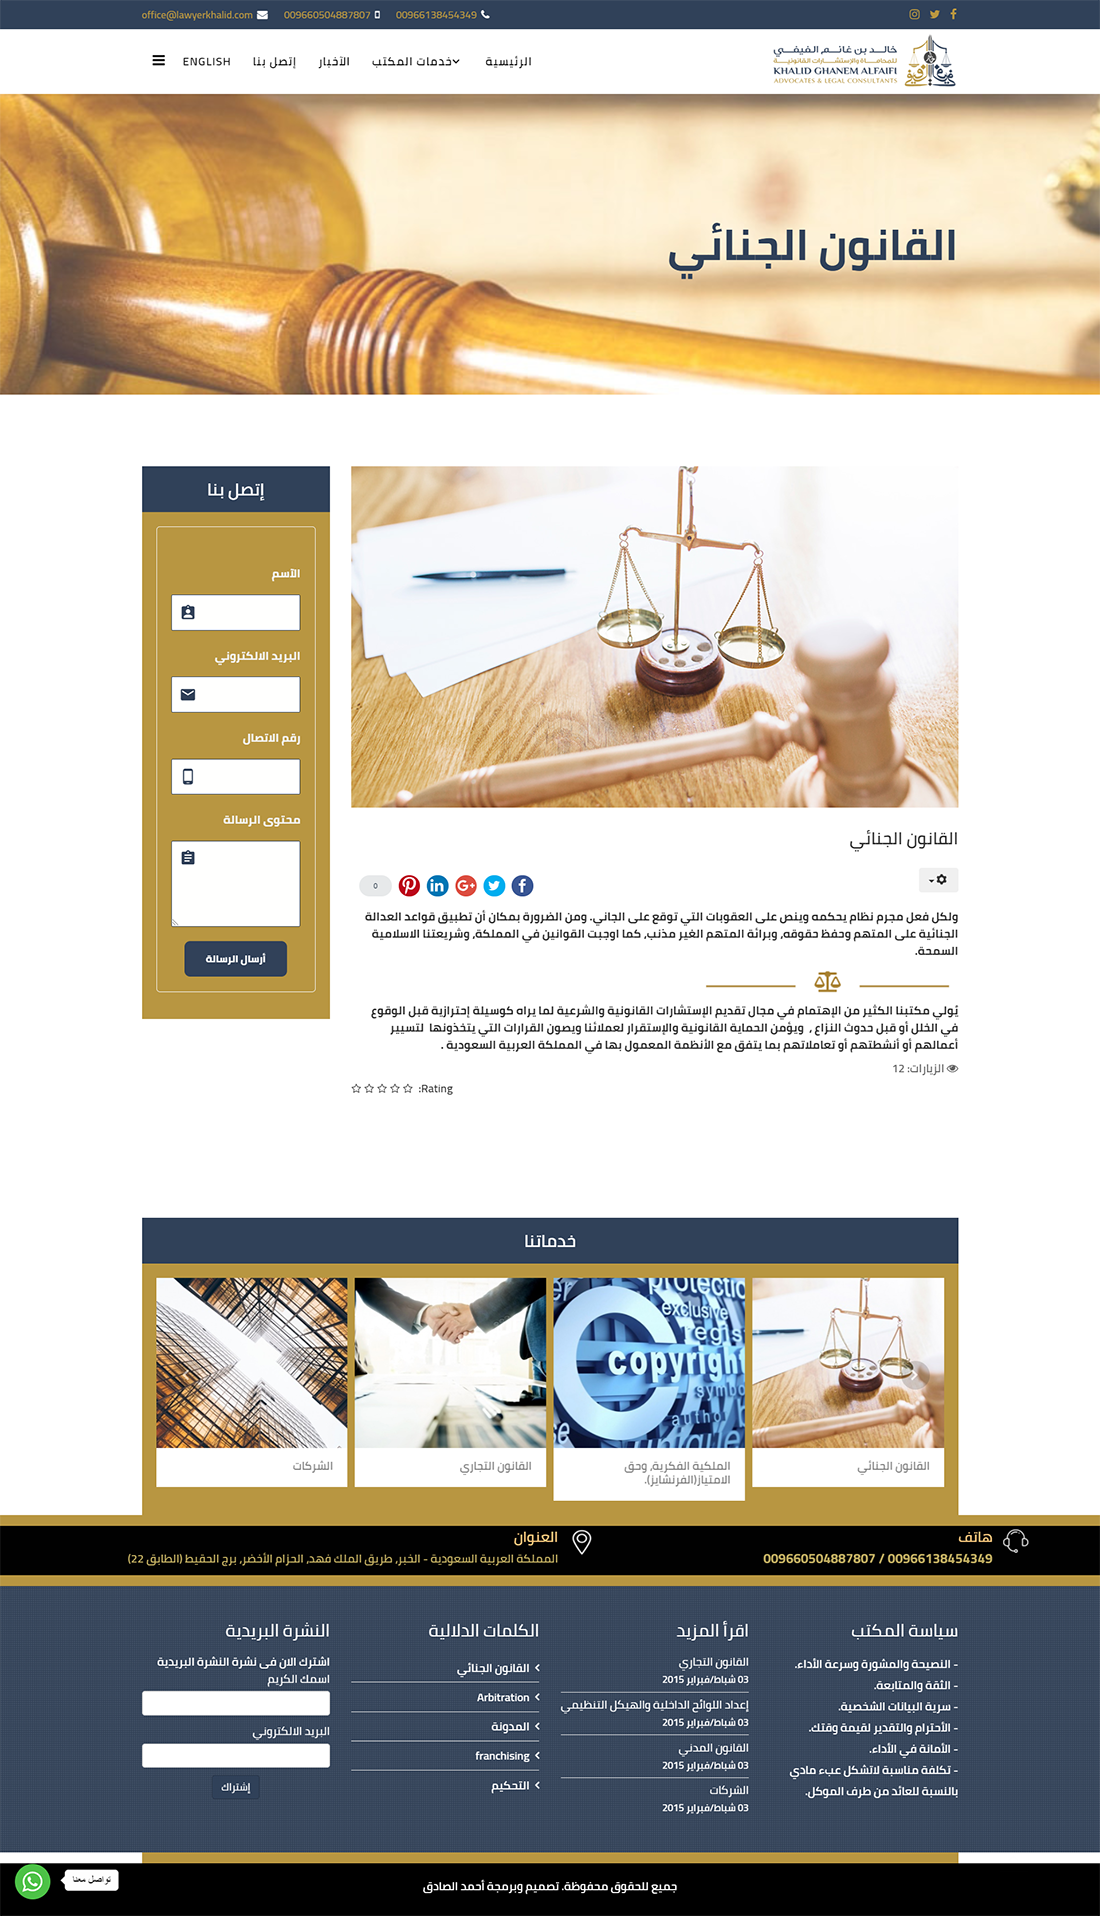 تصميم موقع المحامي خالد الفيفي فى المدينة المنورة - السعودية